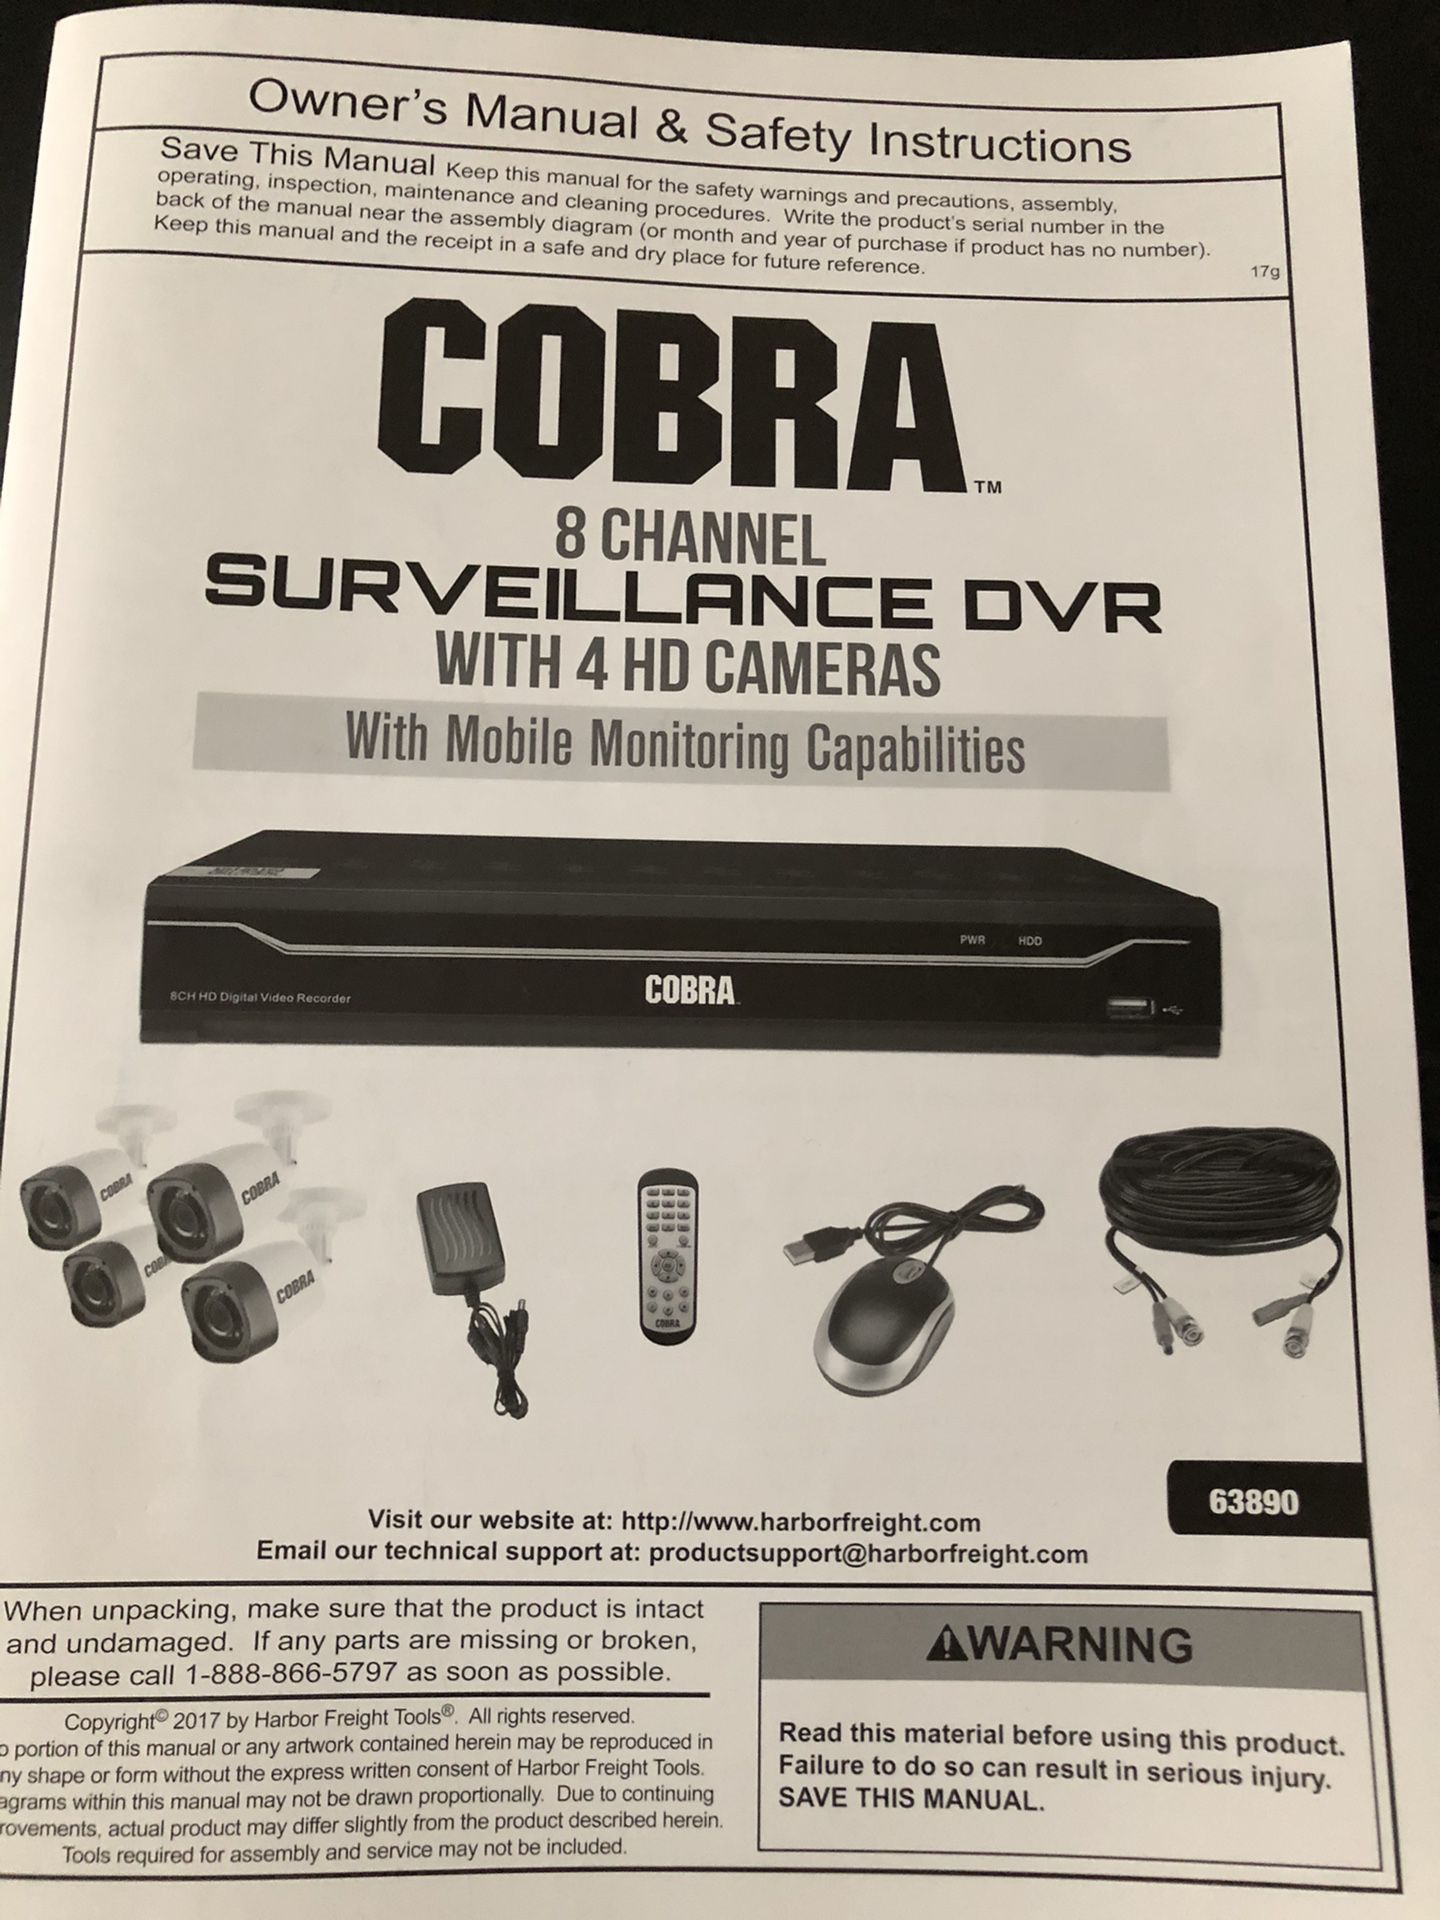 Cobra surveillance dvr